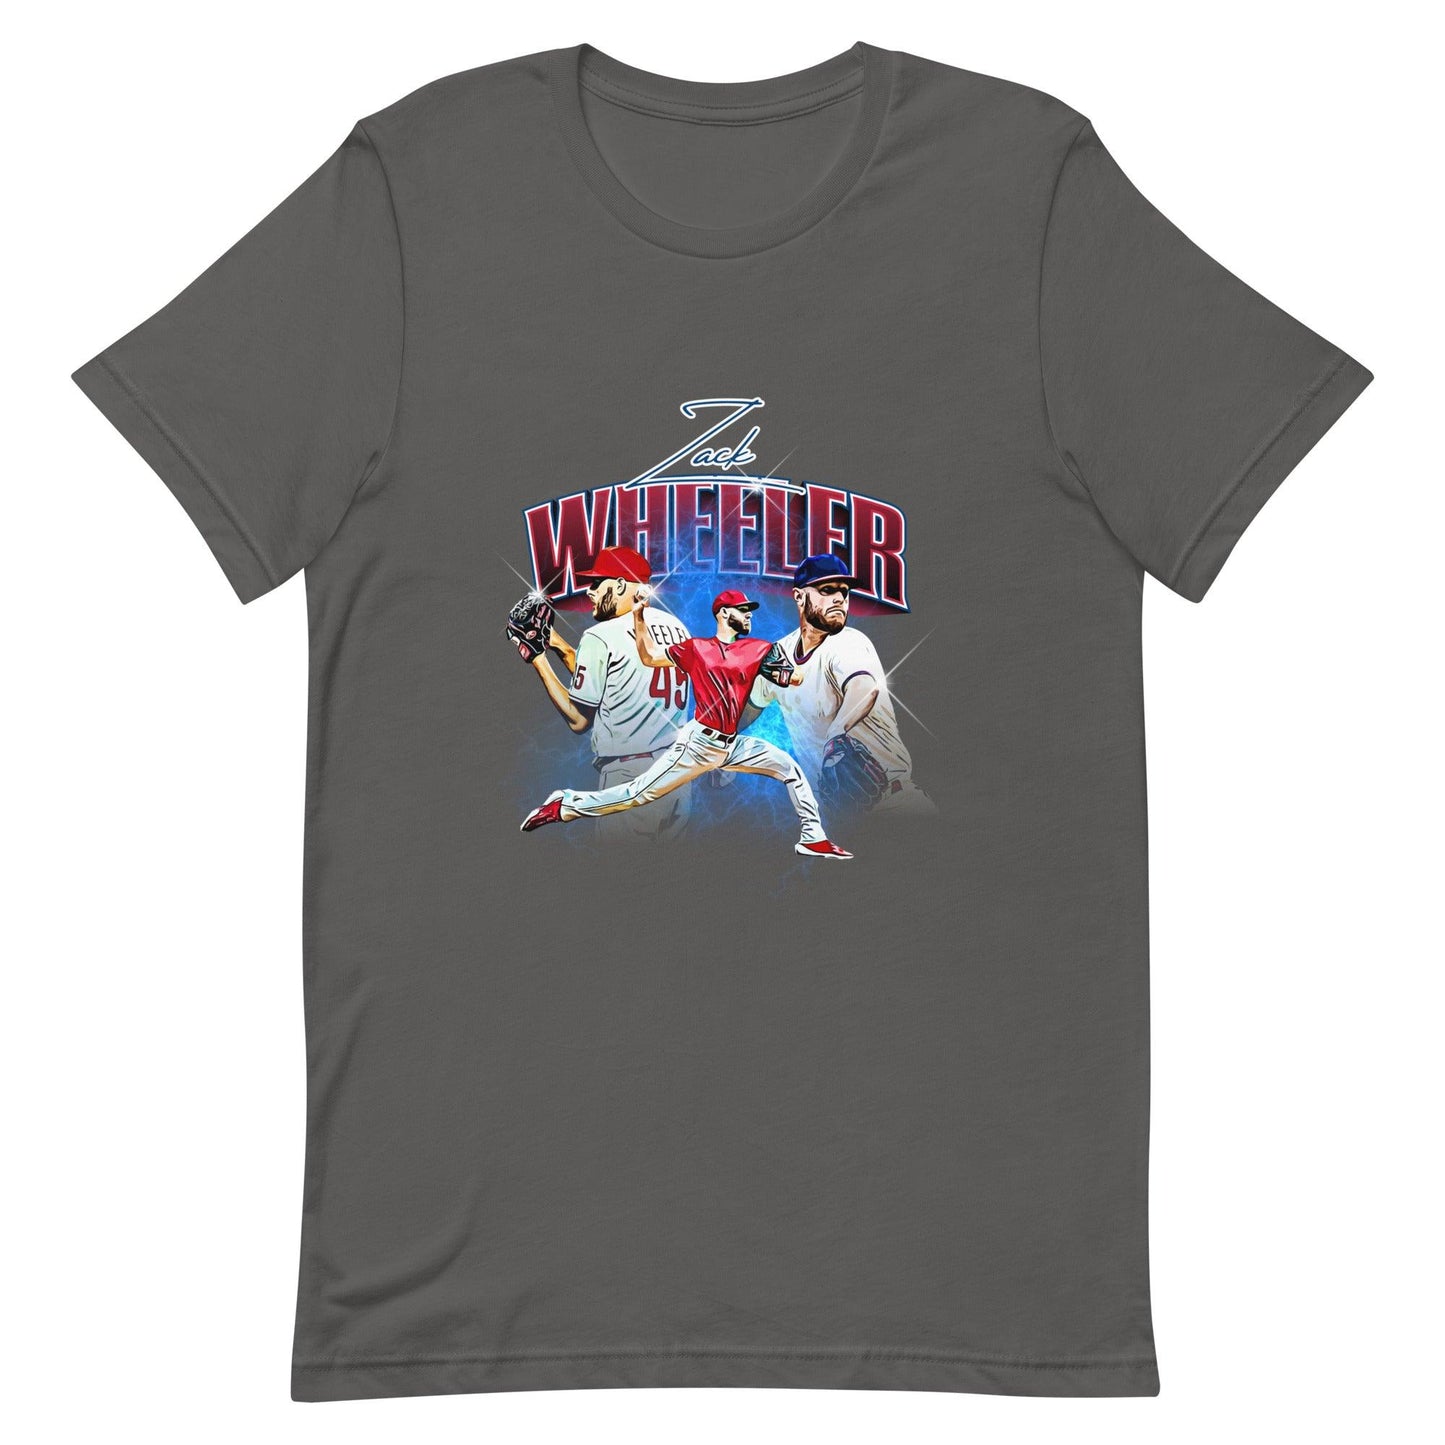 Zack Wheeler “Essential” t-shirt - Fan Arch